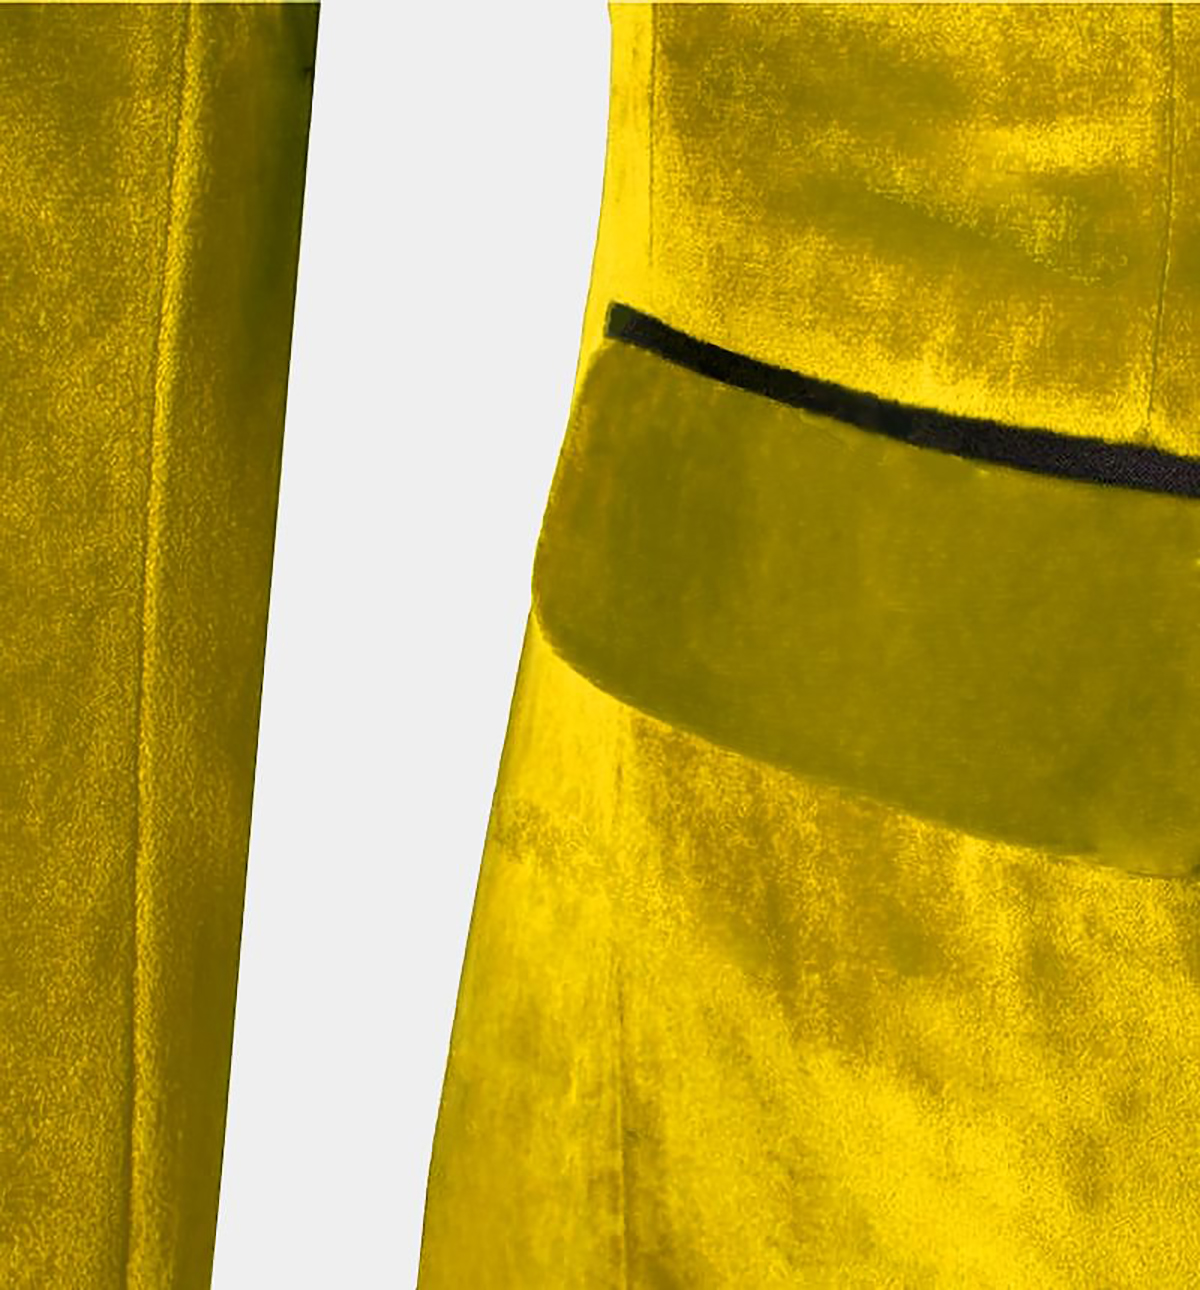 Trim Fit Düğün Erkekler Takım Sekreter Groom Giyim Birleştirme Renk Altın Resmi Takım Özel Boyut Tepeli Yakel 3 Parça Blazer+Yelek+Pantolon